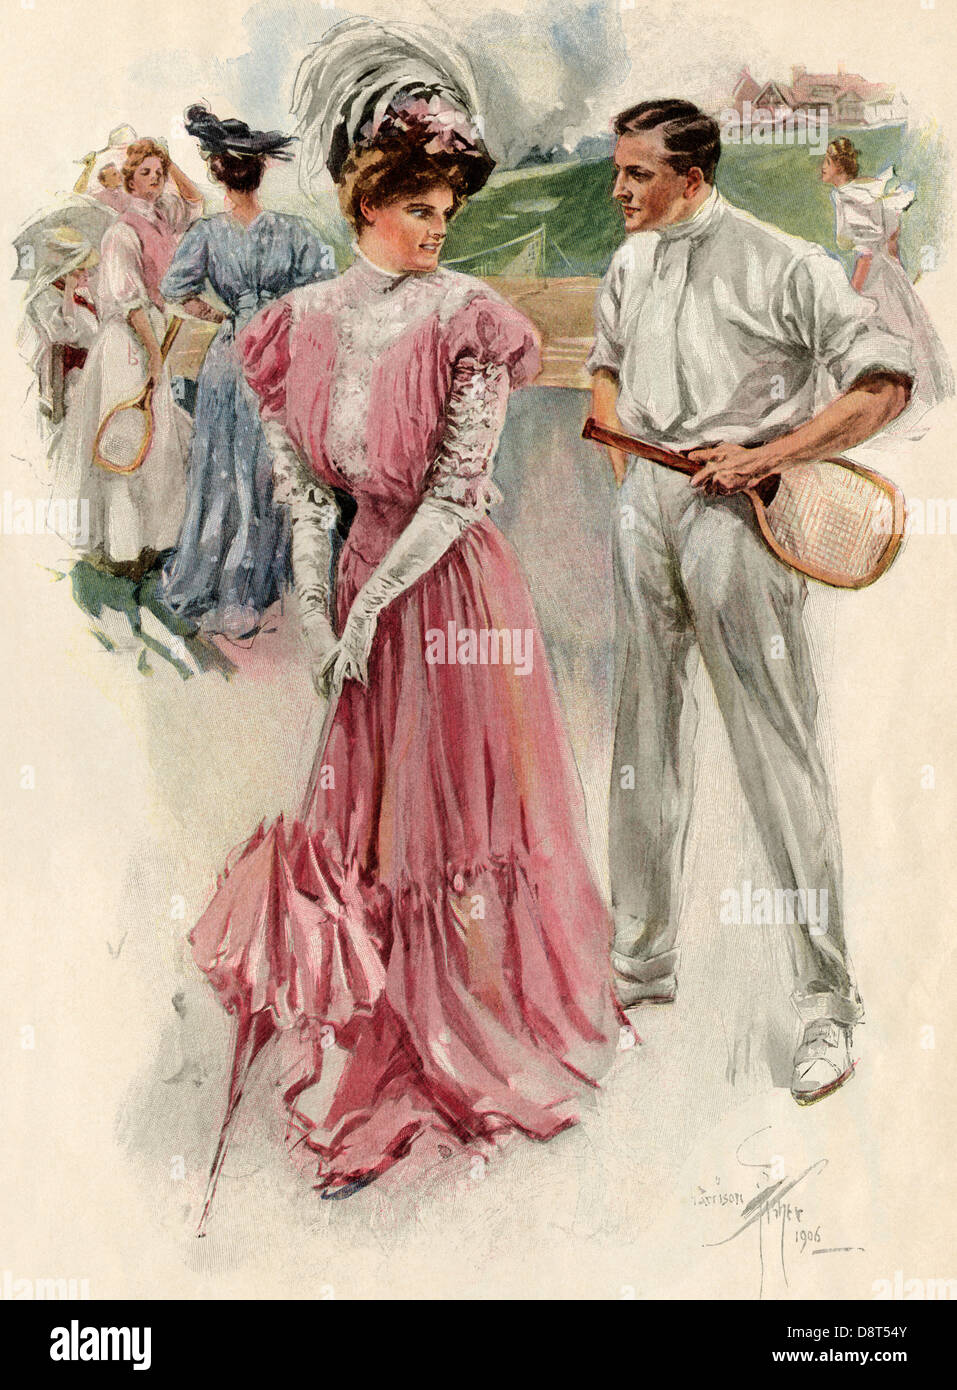 Tennis player distrait par un charmeur, mode femme, vers 1900. Demi-teinte de couleur d'une illustration Banque D'Images